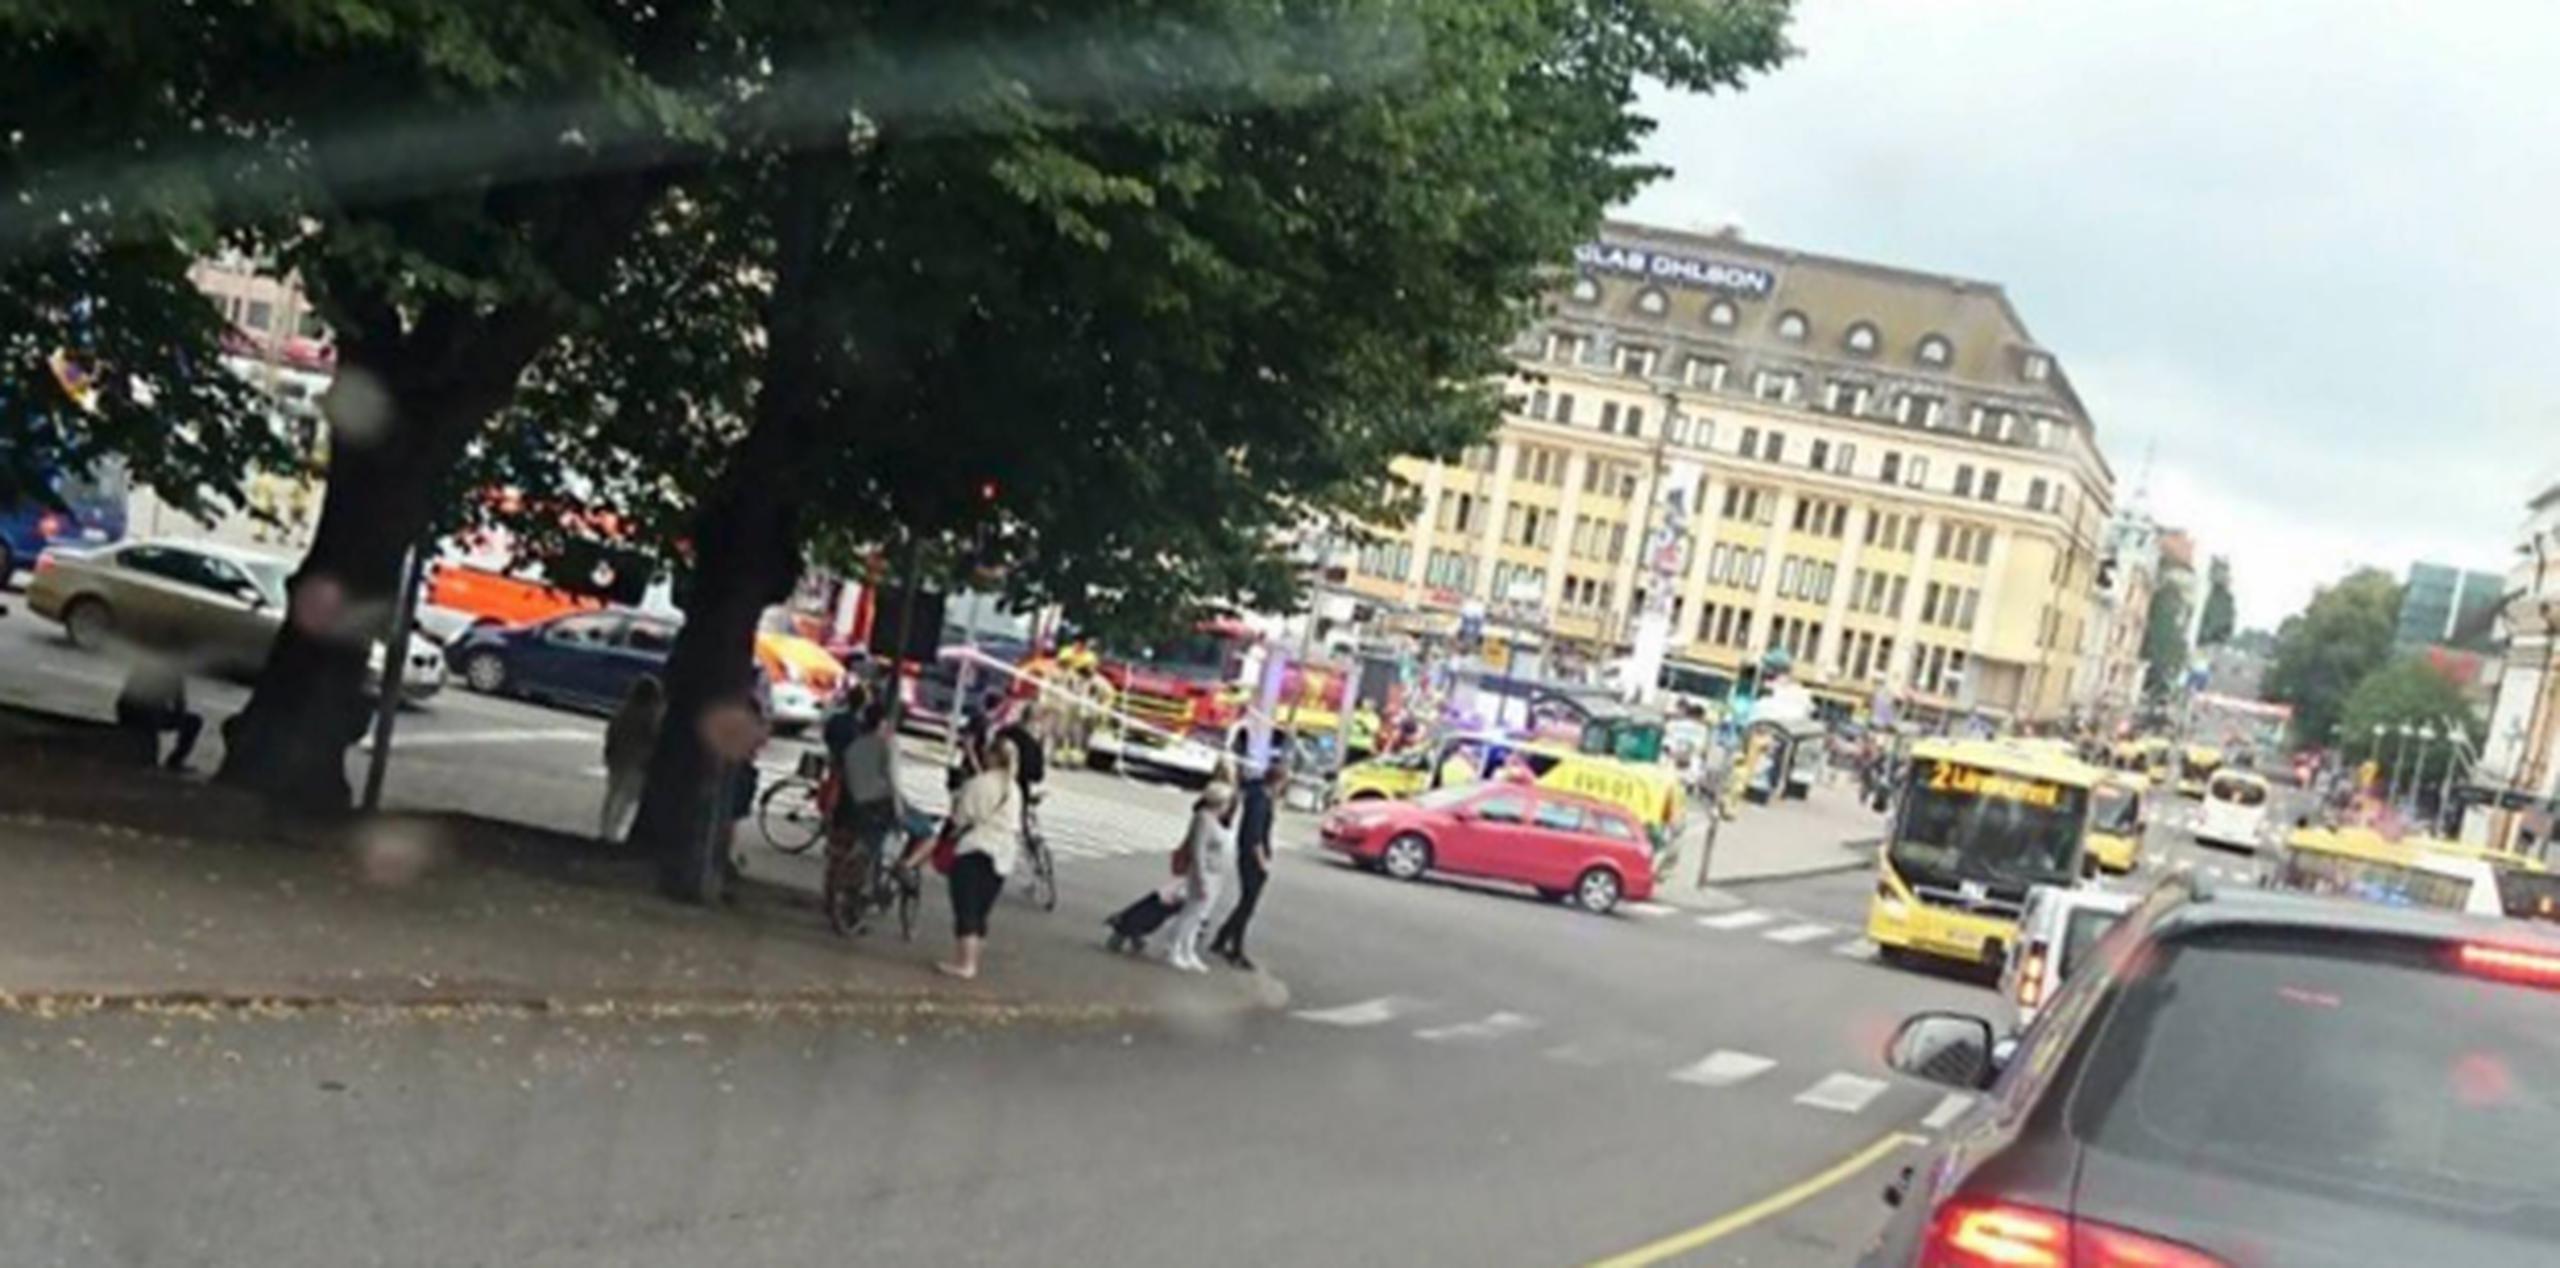 Escenas de caos se vivieron en la plaza del mercado de Turku, Finlandia, donde varias personas fueron apuñaladas. (Lehtikuva via AP)
